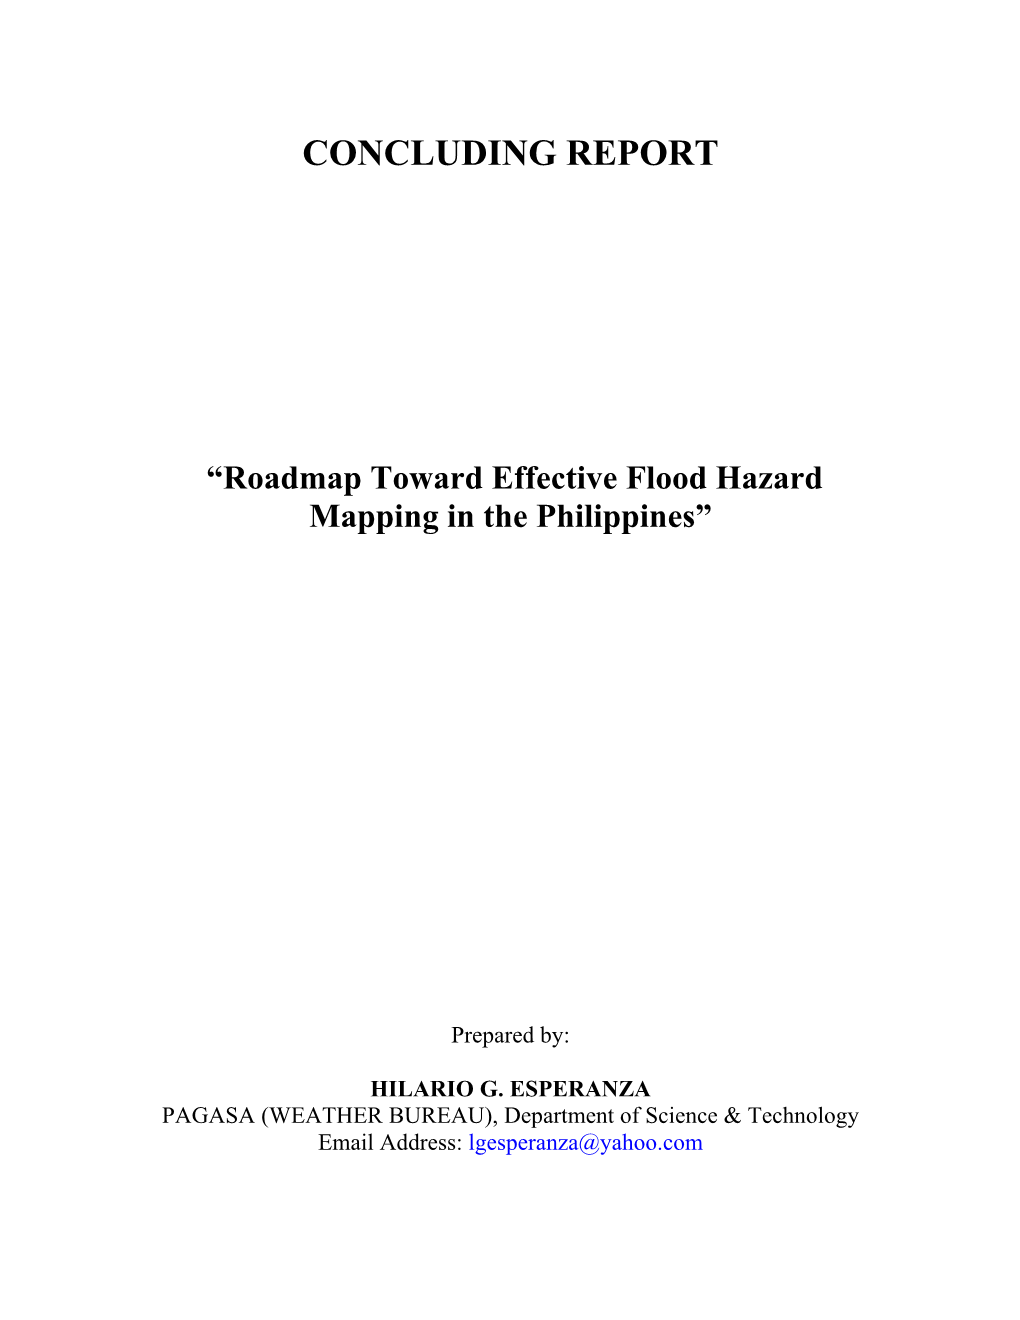 CONCLUDING REPORT “Roadmap Toward Effective Flood Hazard